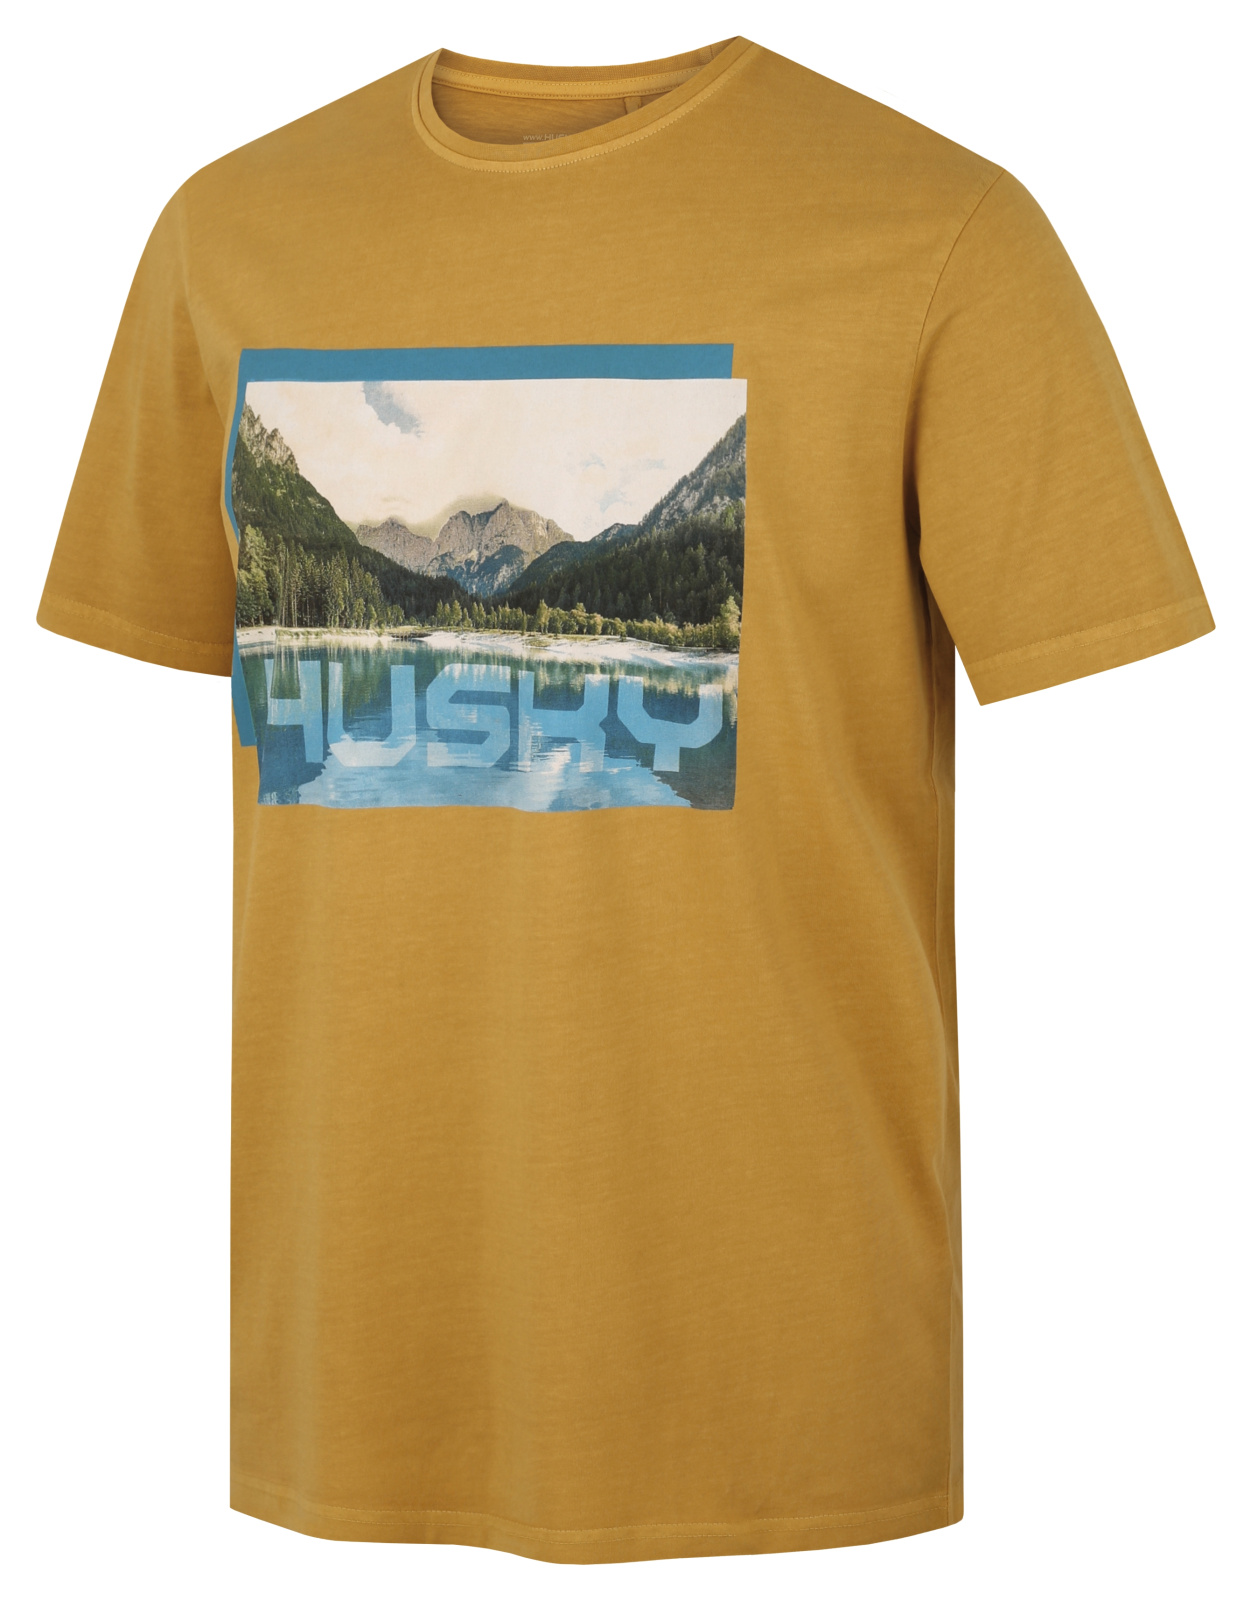 Men's cotton T-shirt HUSKY Tee Lake M mustard